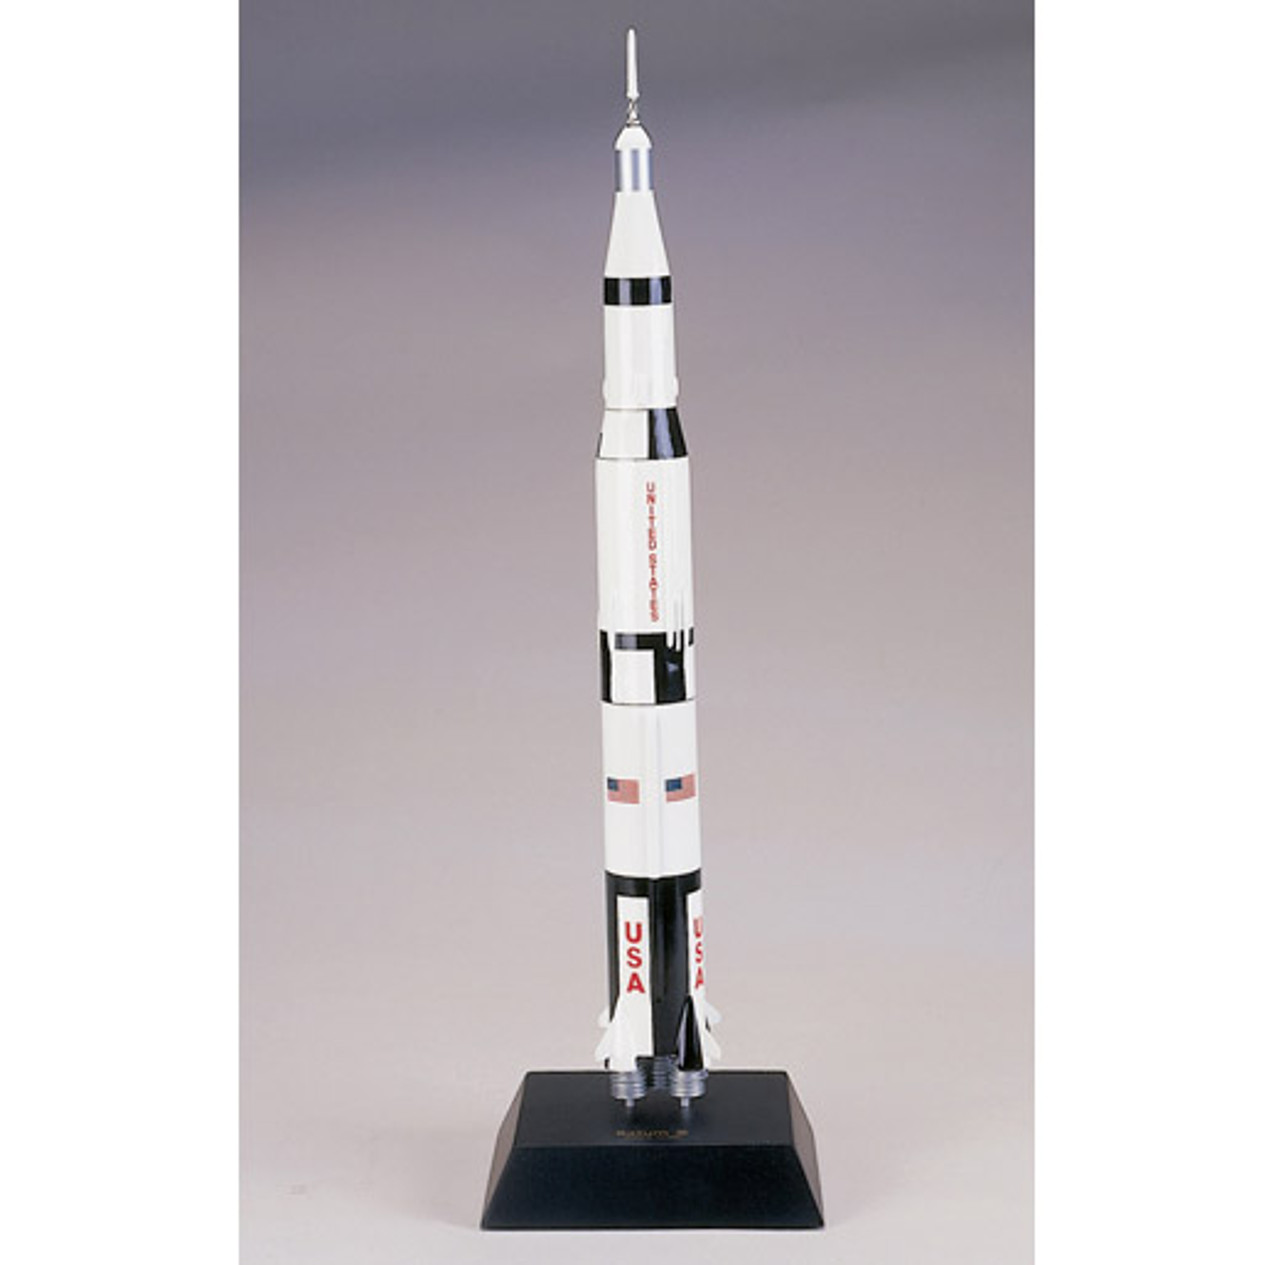 apollo 11 rocket model